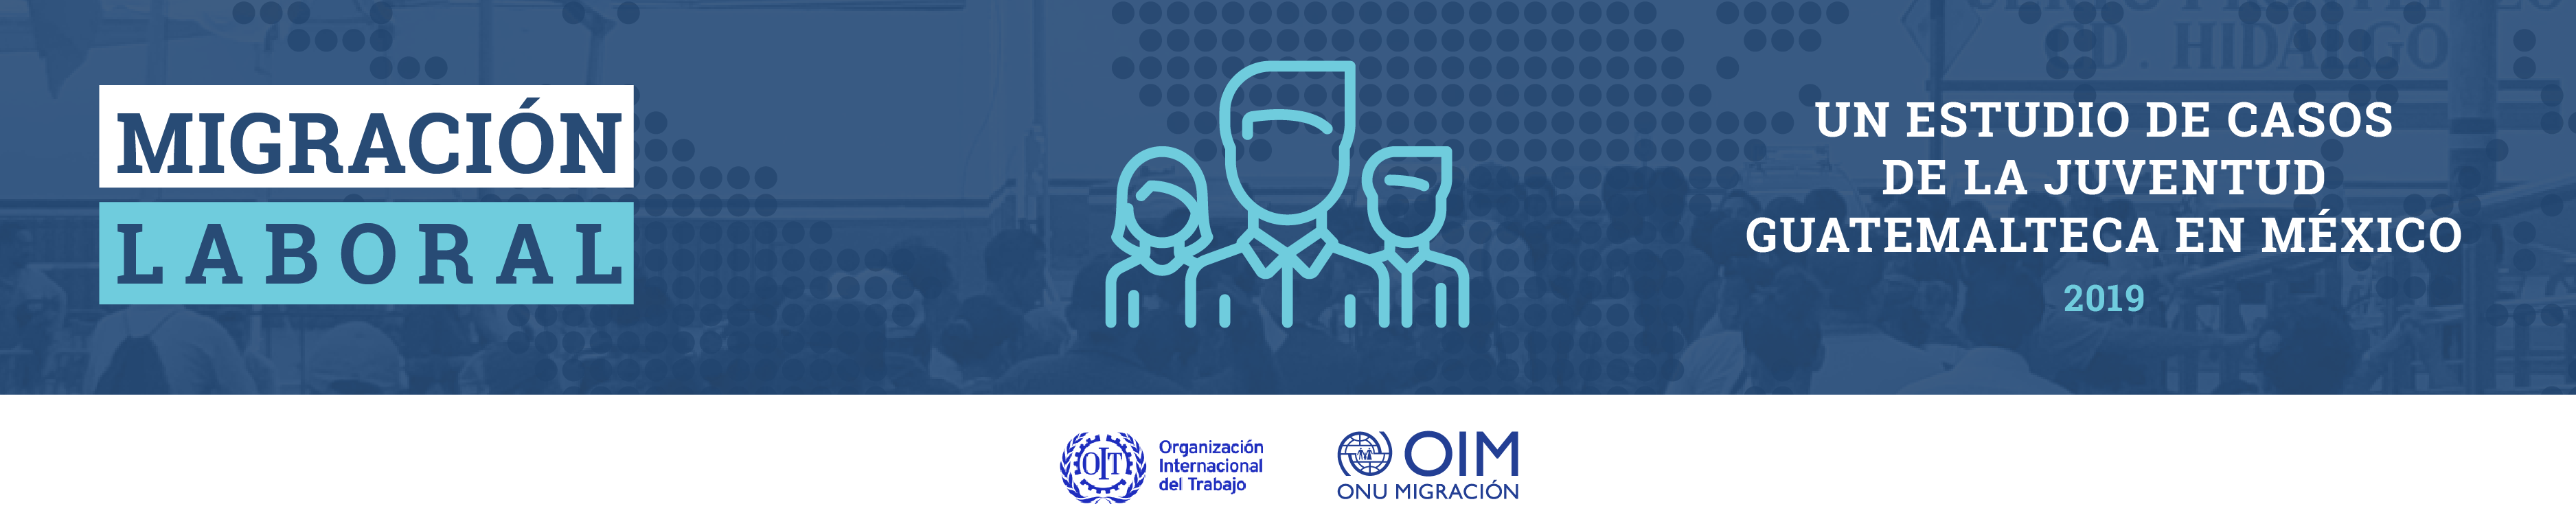 Migración laboral - Un estudio de casos de juventud guatemalteca en México